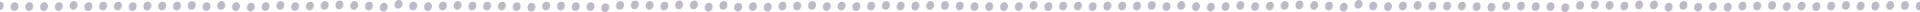 UCN-divider-dots